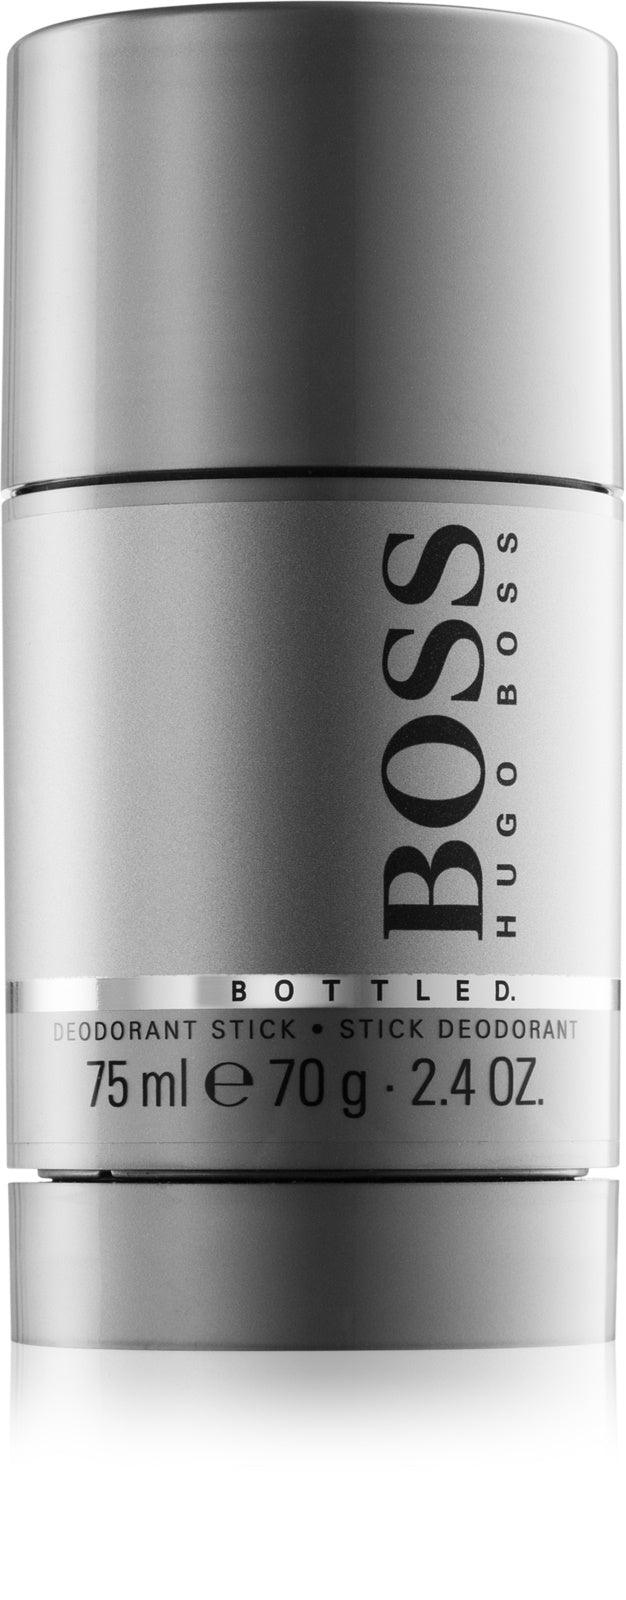 Hugo Boss Bottled 75ml Deodorant Stick for Men - Perfume Oasis